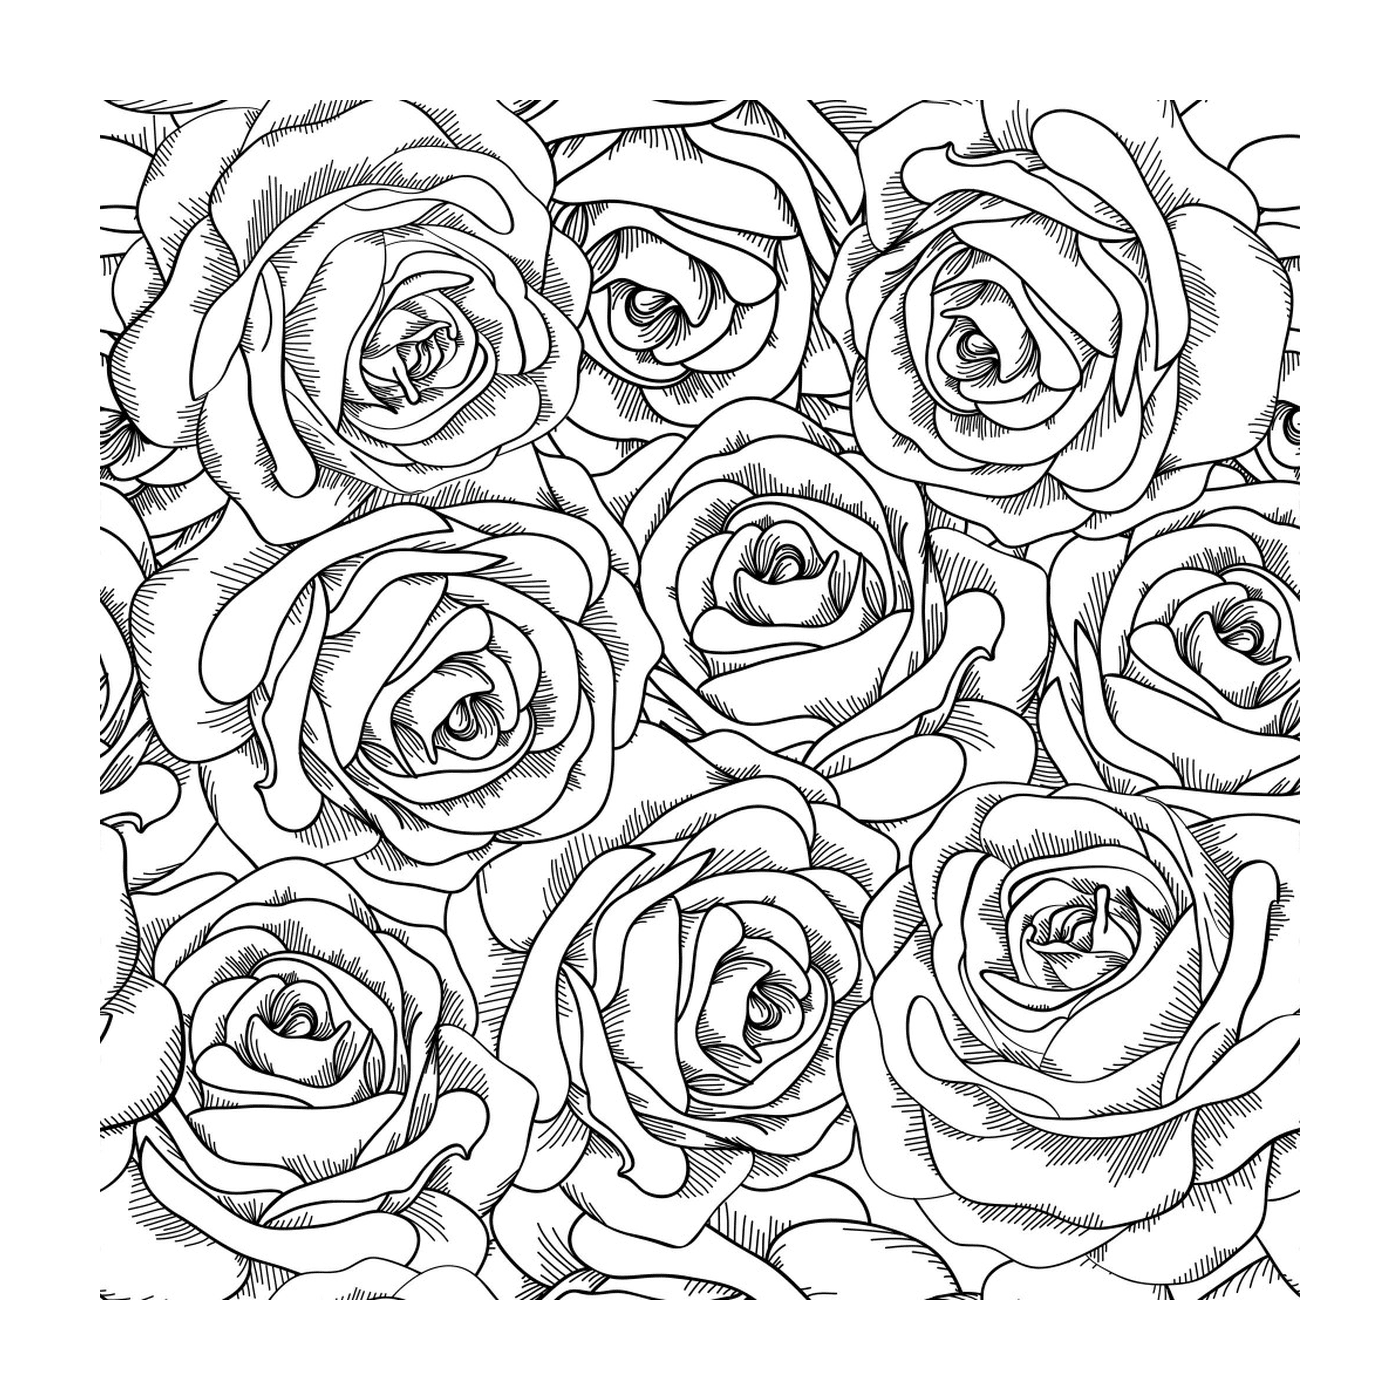   Des roses avec beaucoup de pétales 